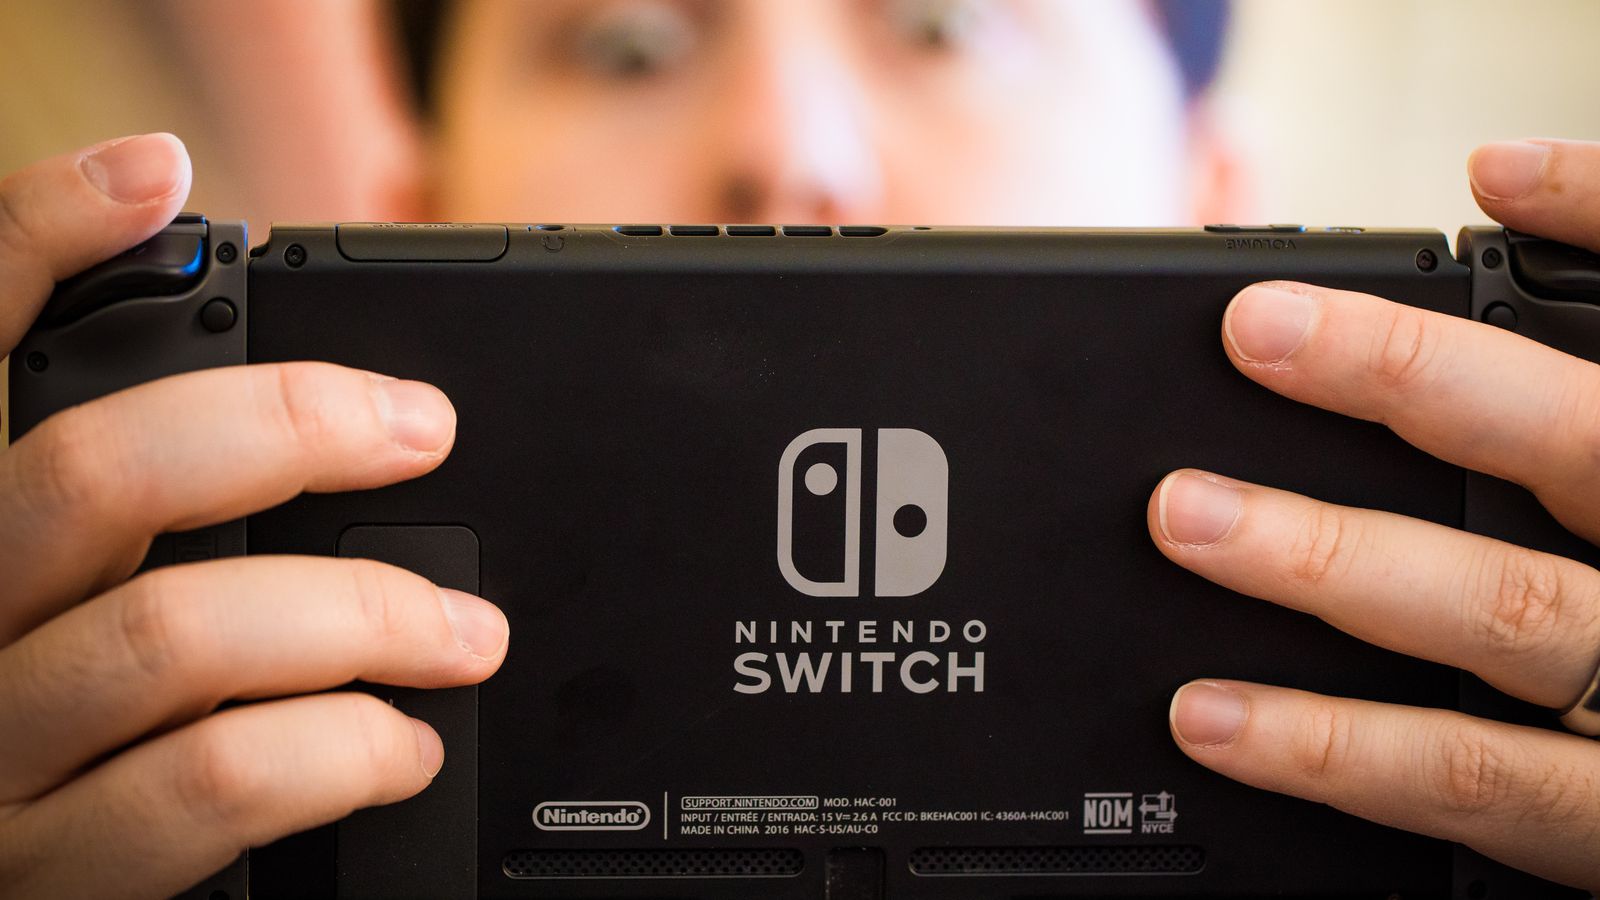 Nintendo Switch 2019 hakk?nda tum detaylar image image